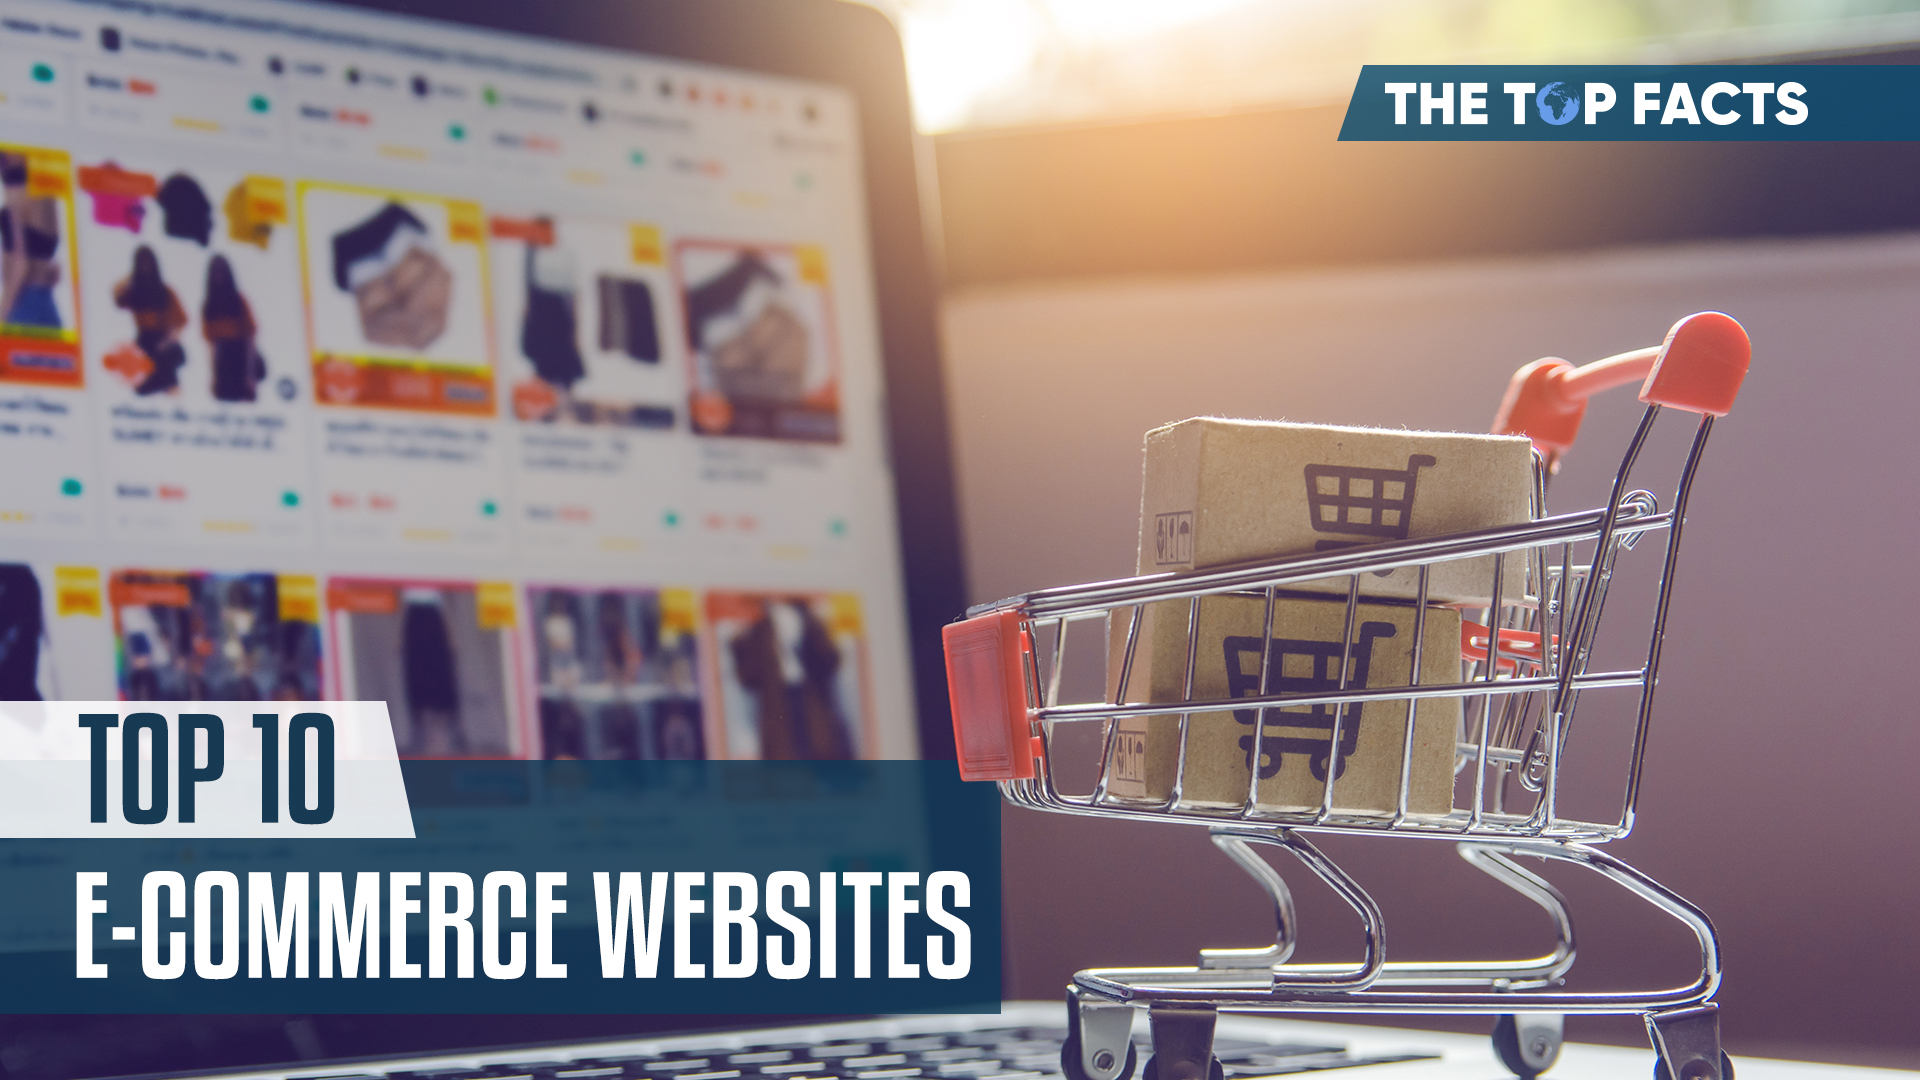 Top 10 E-Commerce Websites